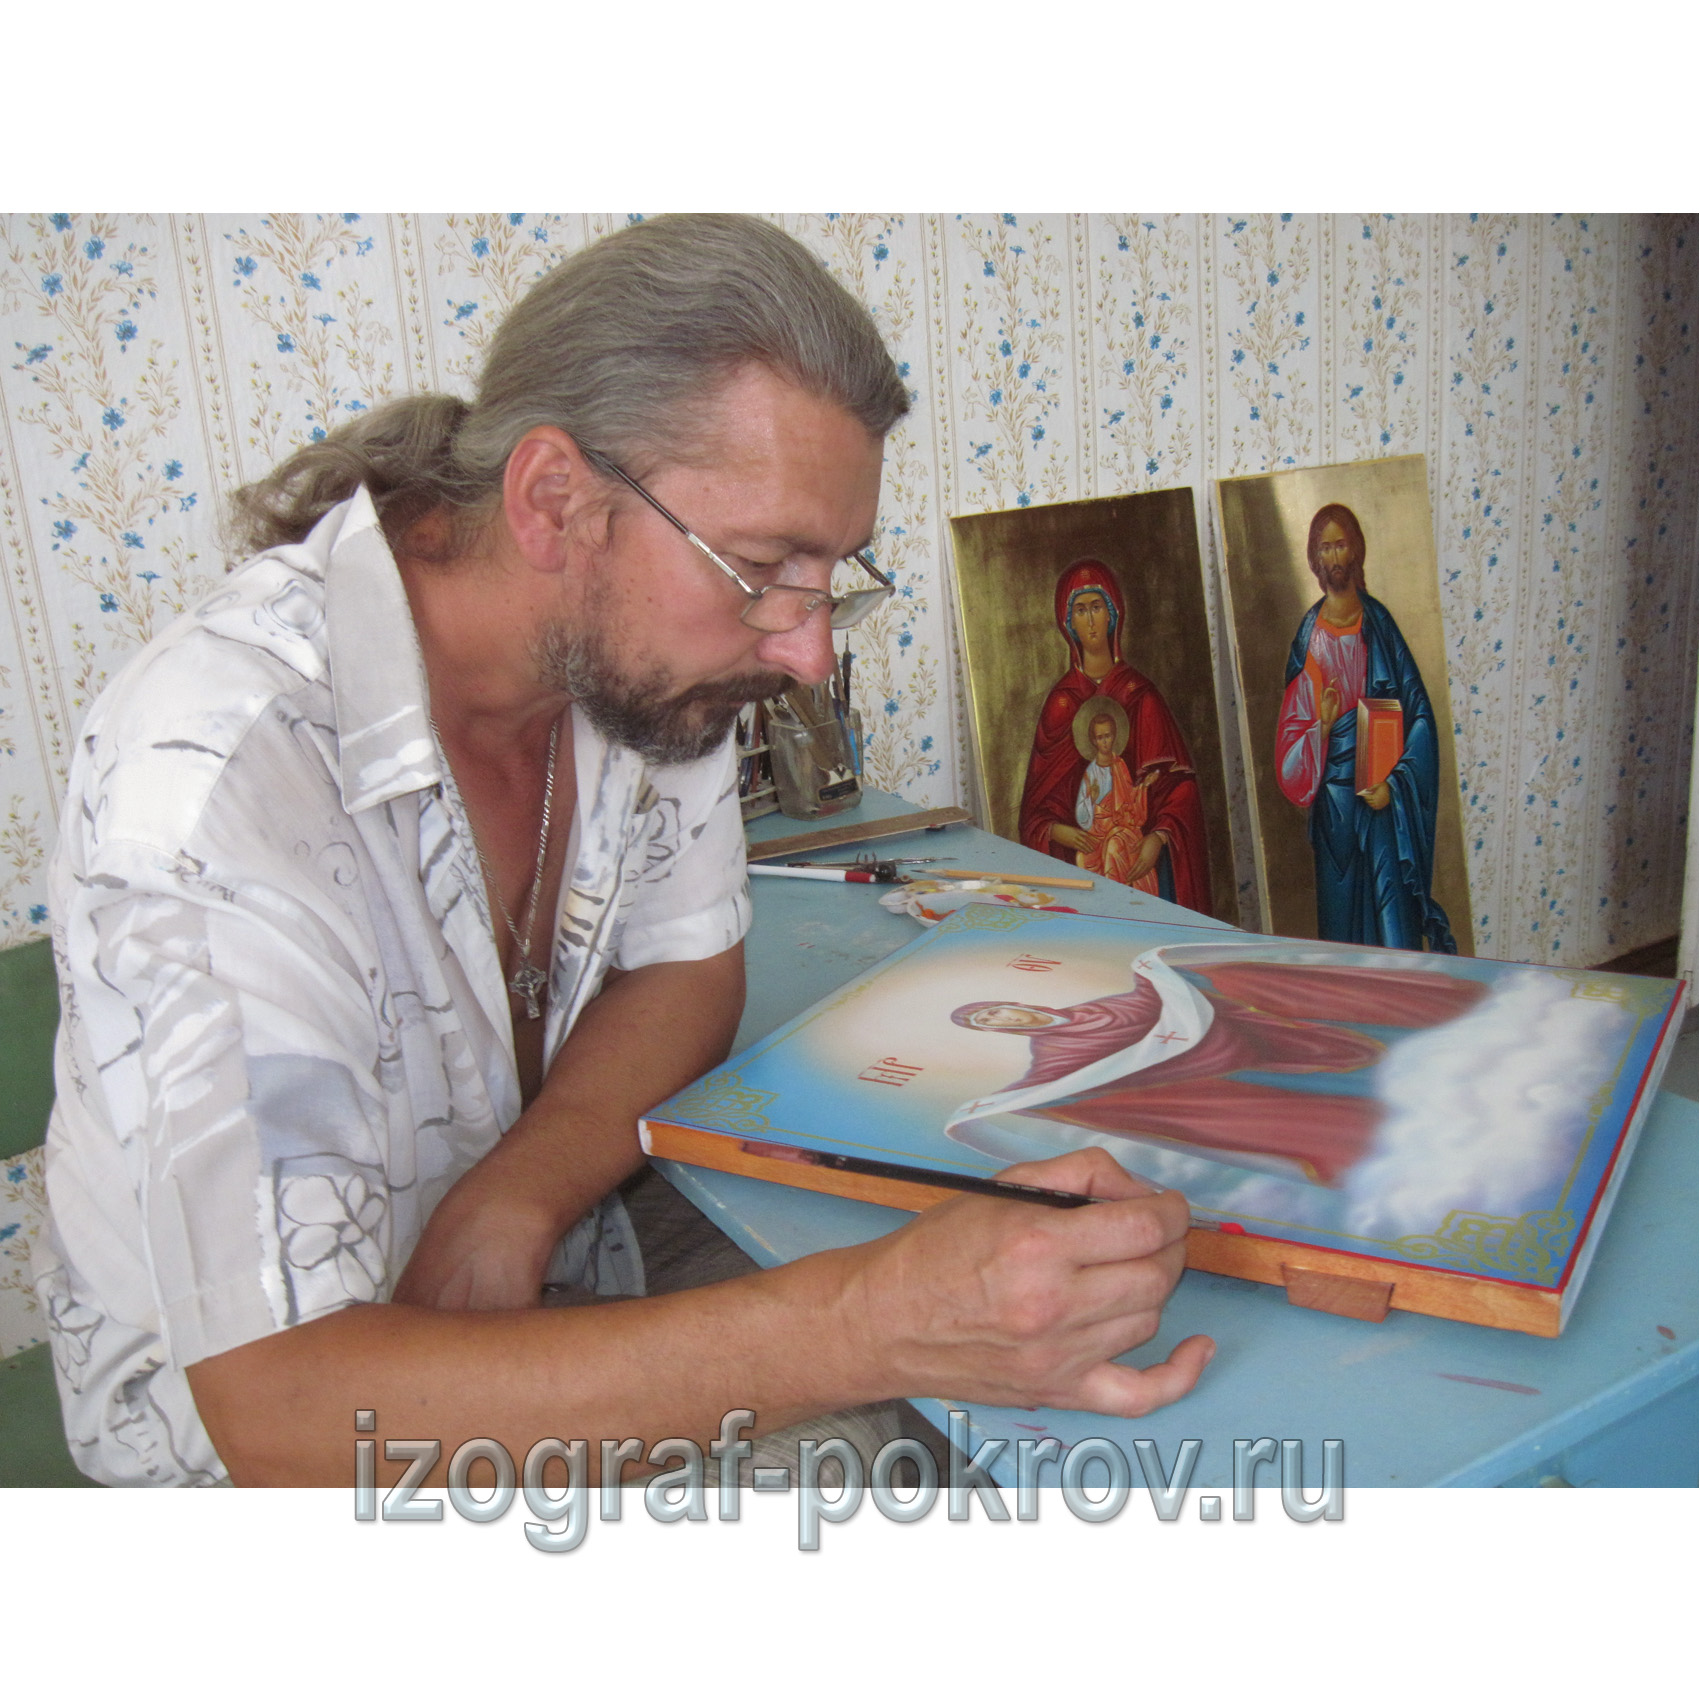 Иконописец заканчивает икону Покрова Пресвятой Богородицы